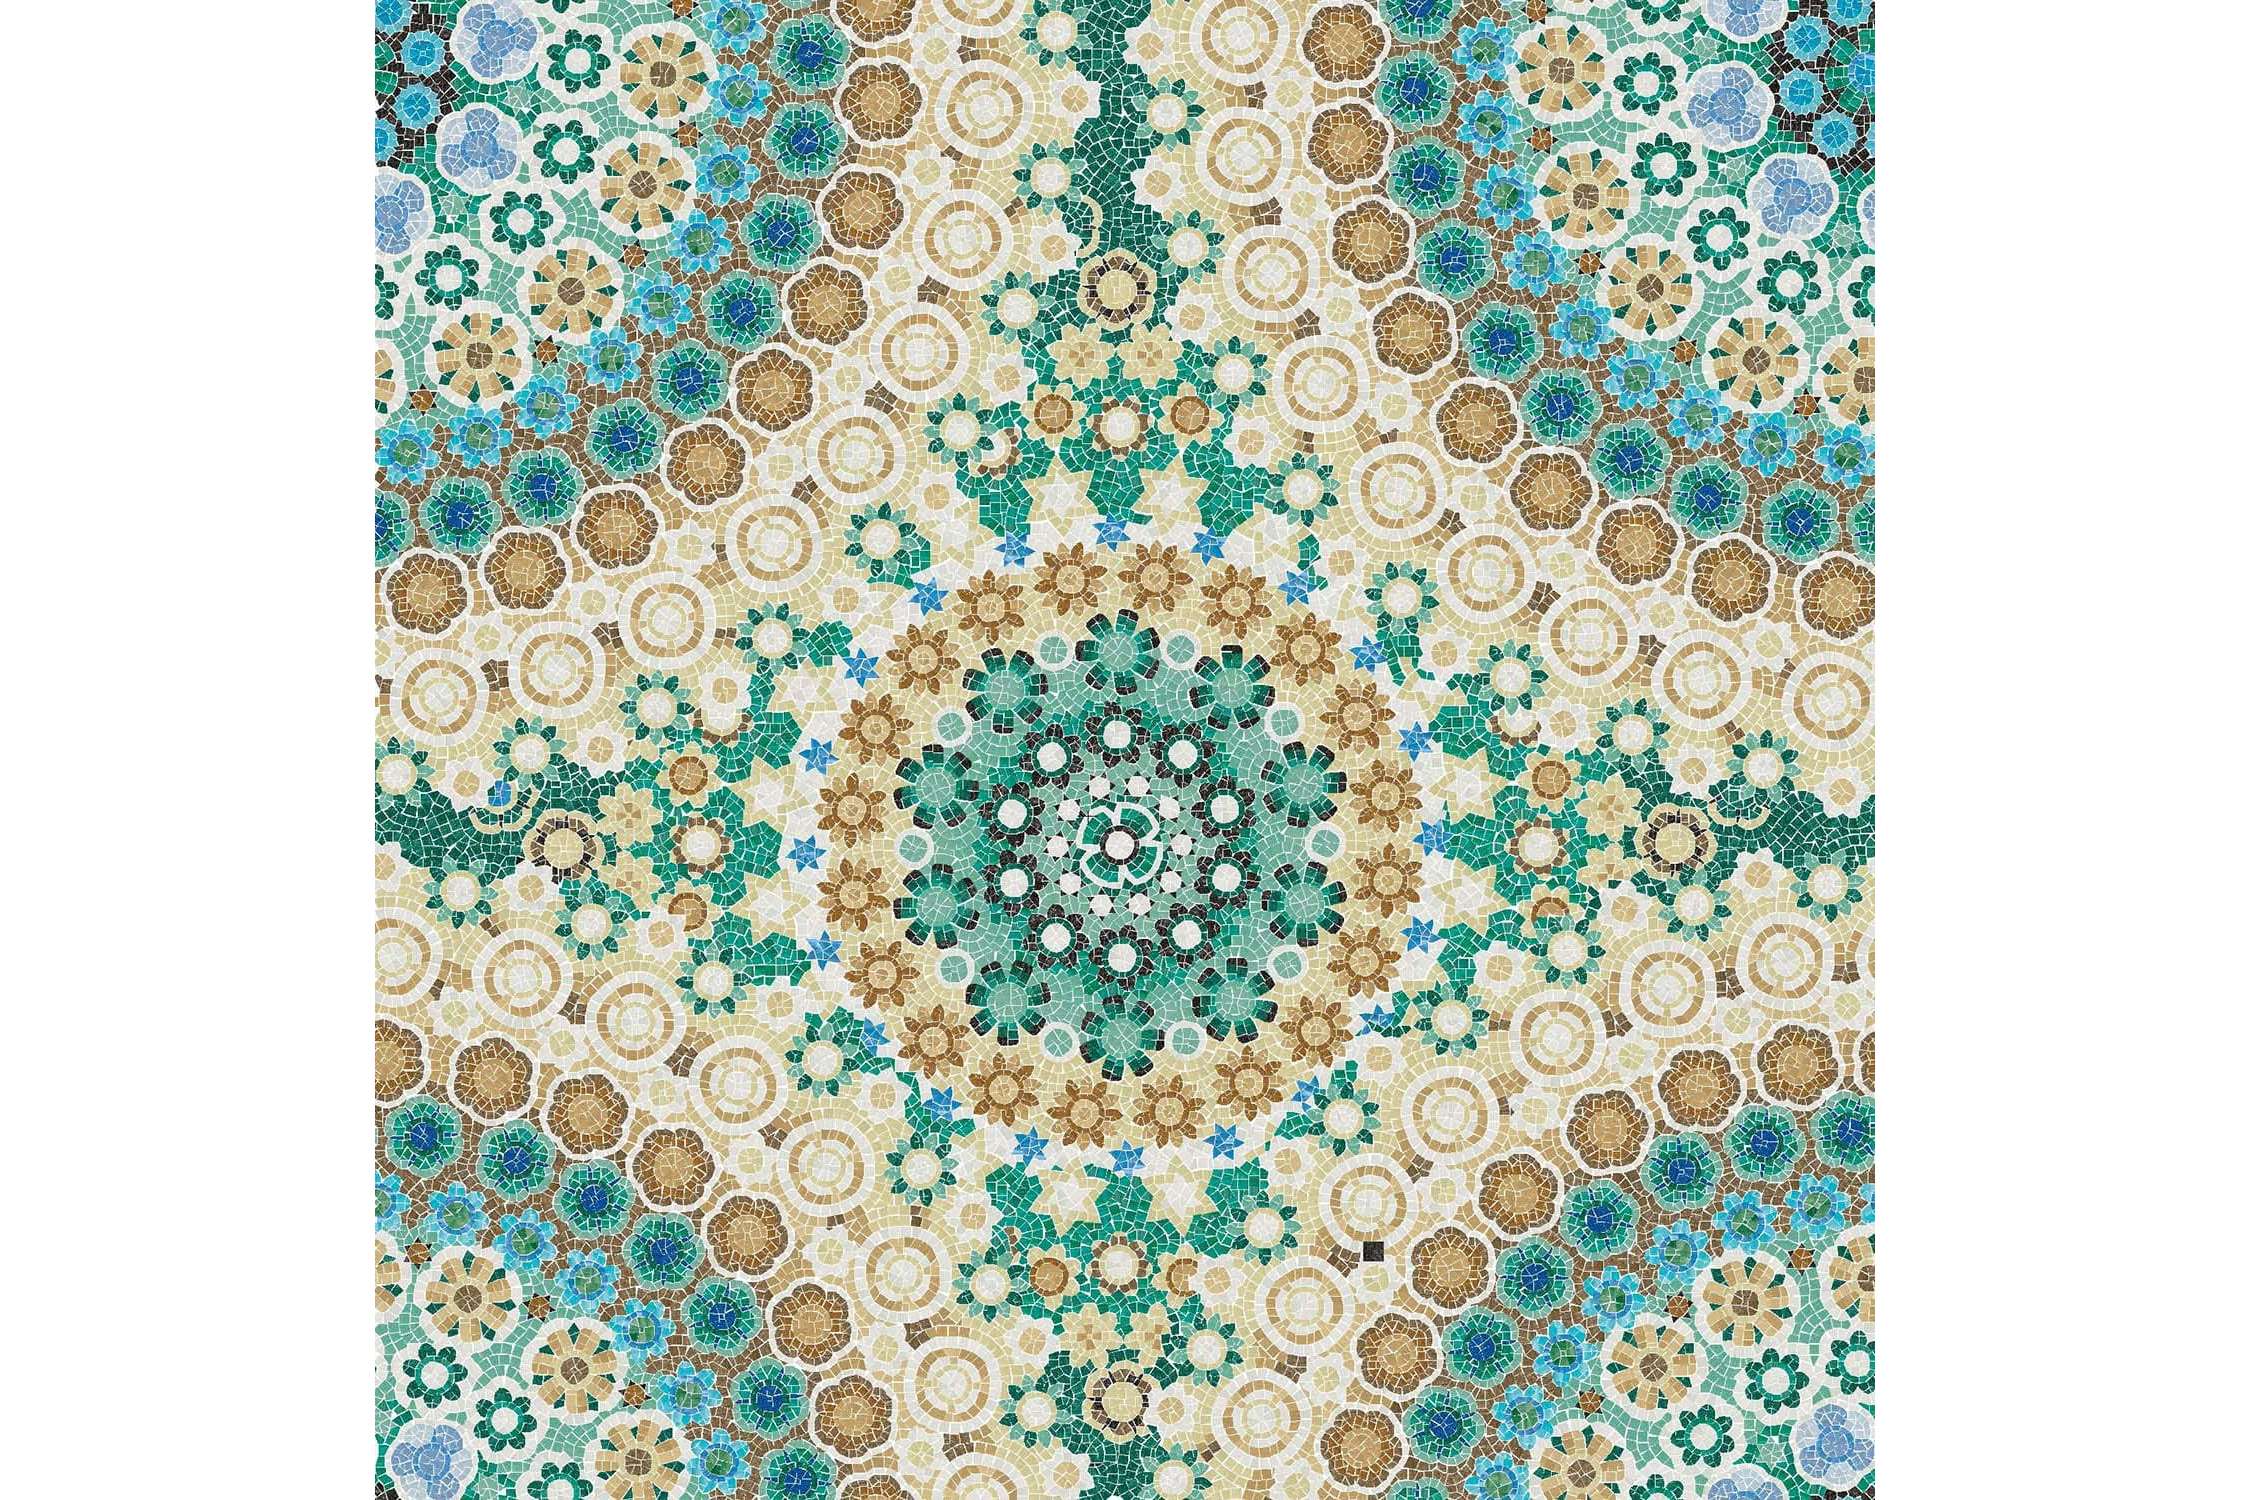 Мозаика Trend Murrine (Мурине) Murano 2